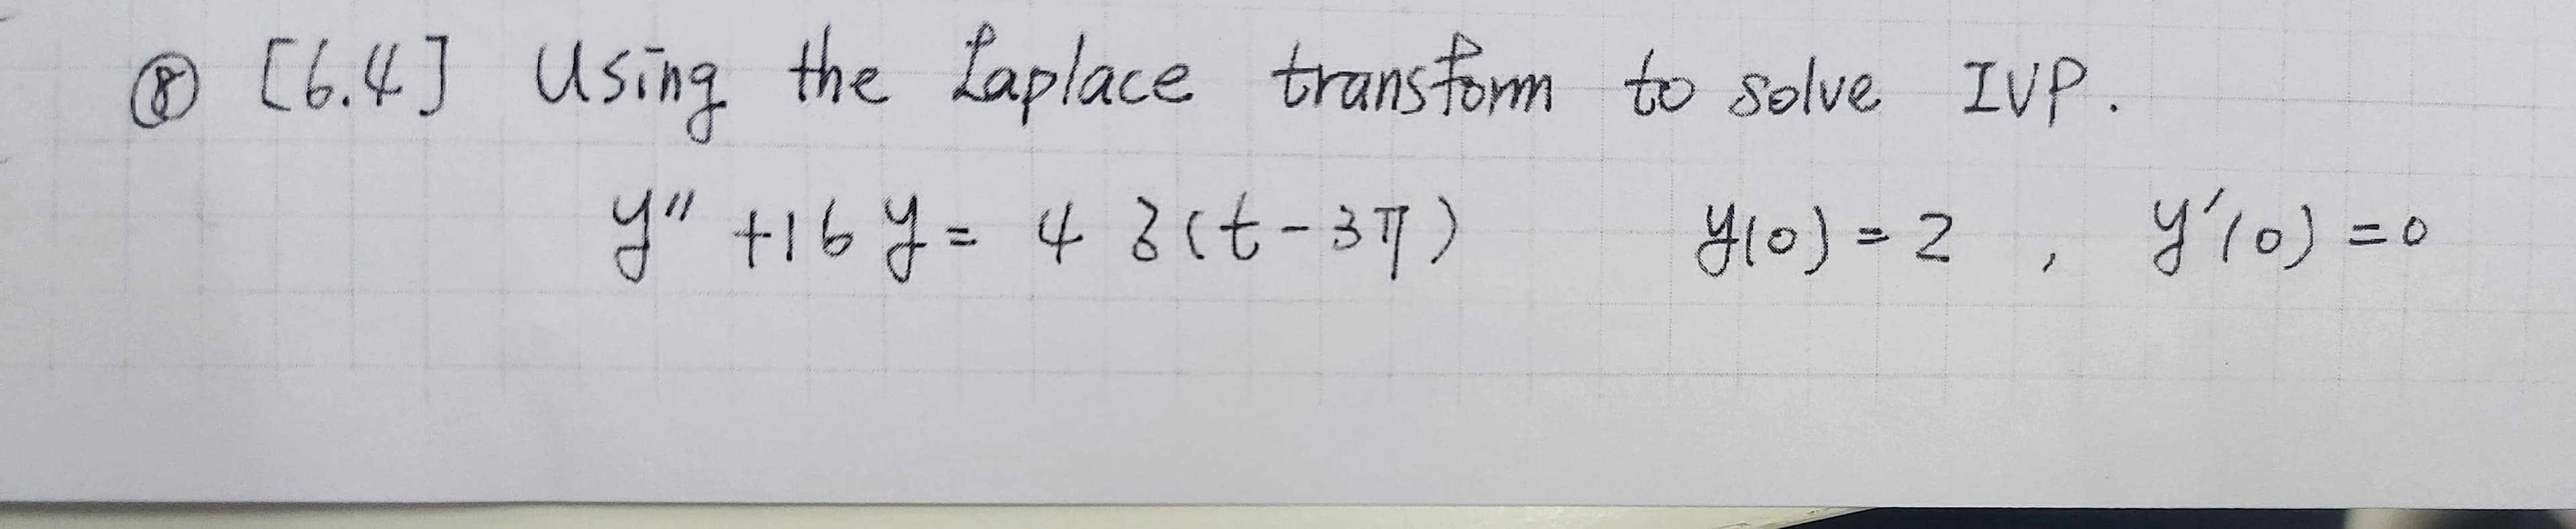 ®[6.4] Using the Laplace transform to solve IVP.
yu t16y= 43(t-37)
H10)=2 , y'0) =0
y10)%=D2
%3D
3D0
